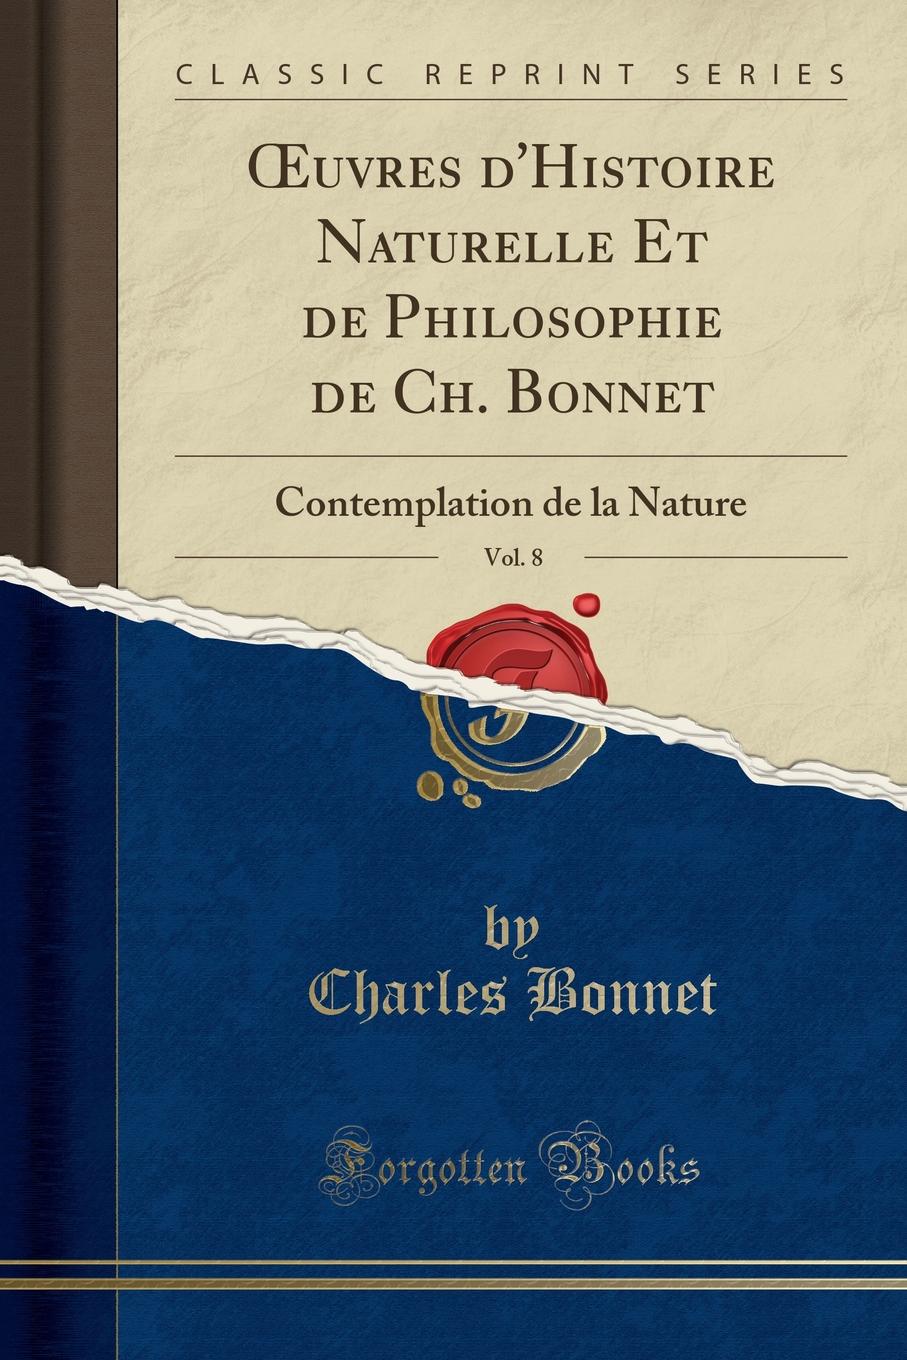 Charles Bonnet OEuvres d.Histoire Naturelle Et de Philosophie de Ch. Bonnet, Vol. 8. Contemplation de la Nature (Classic Reprint)